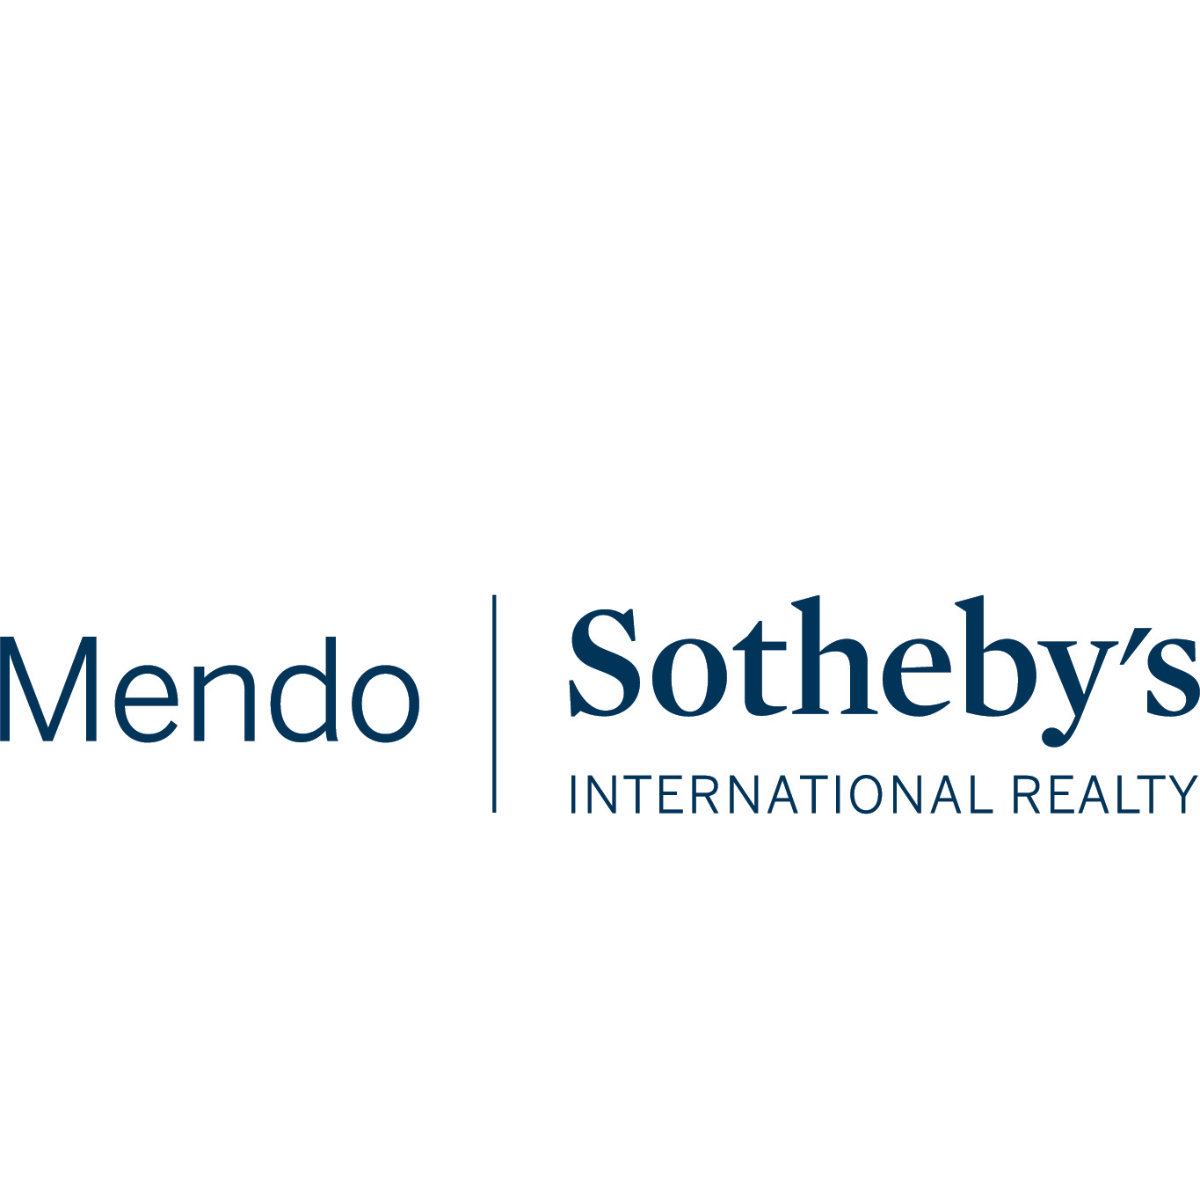 Mendo Sotheby's International Realty (Copy)